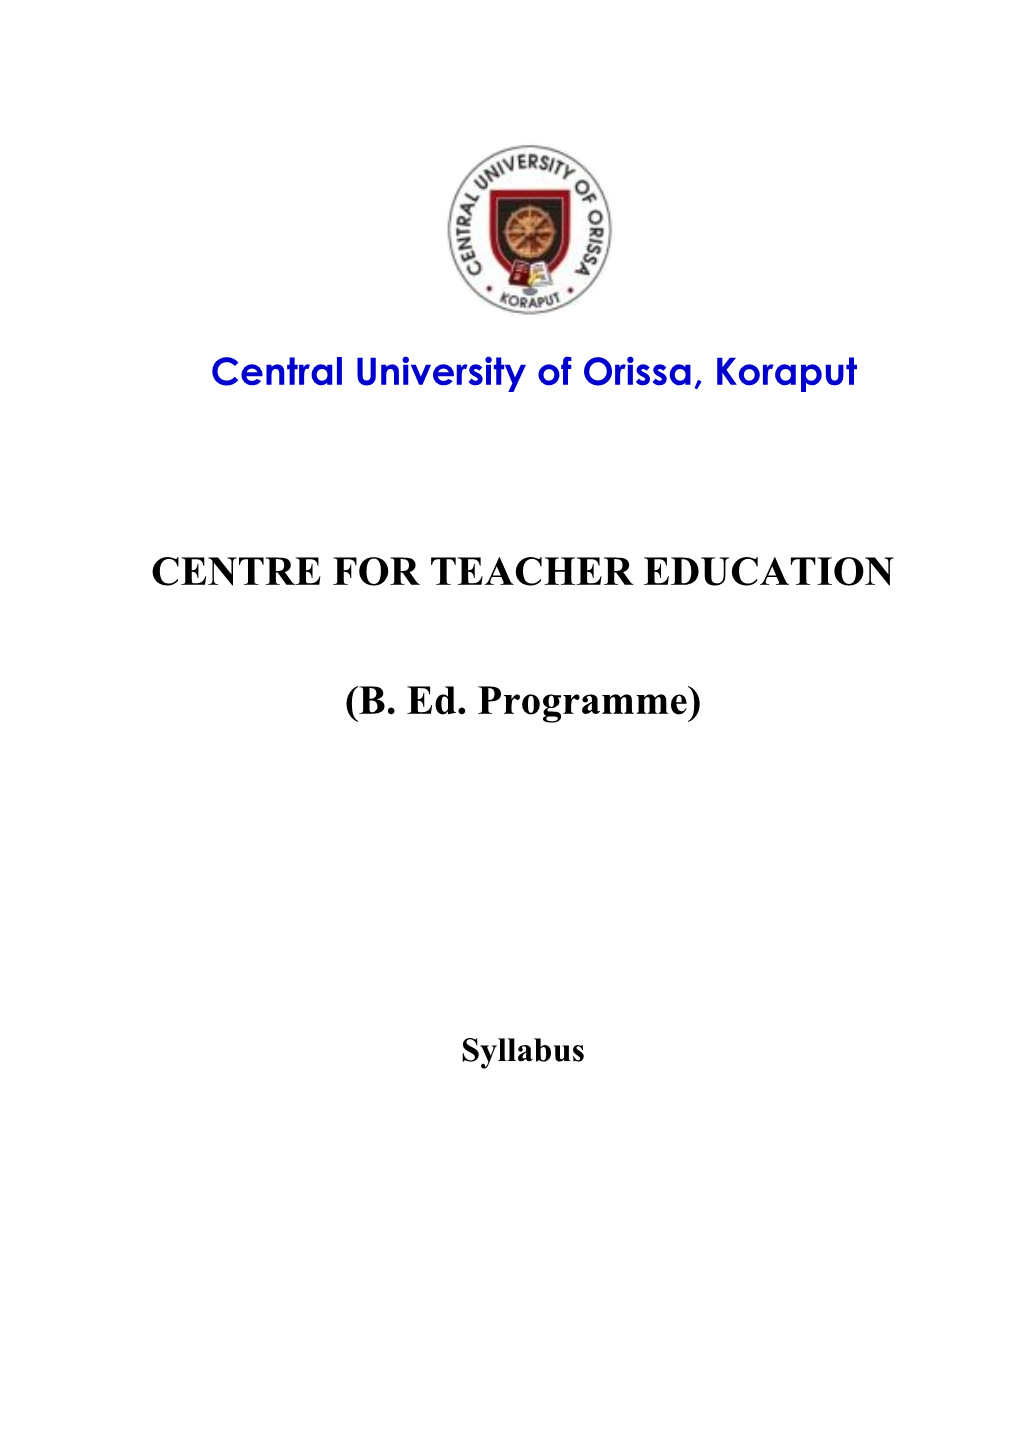 CENTRE for TEACHER EDUCATION (B. Ed. Programme)